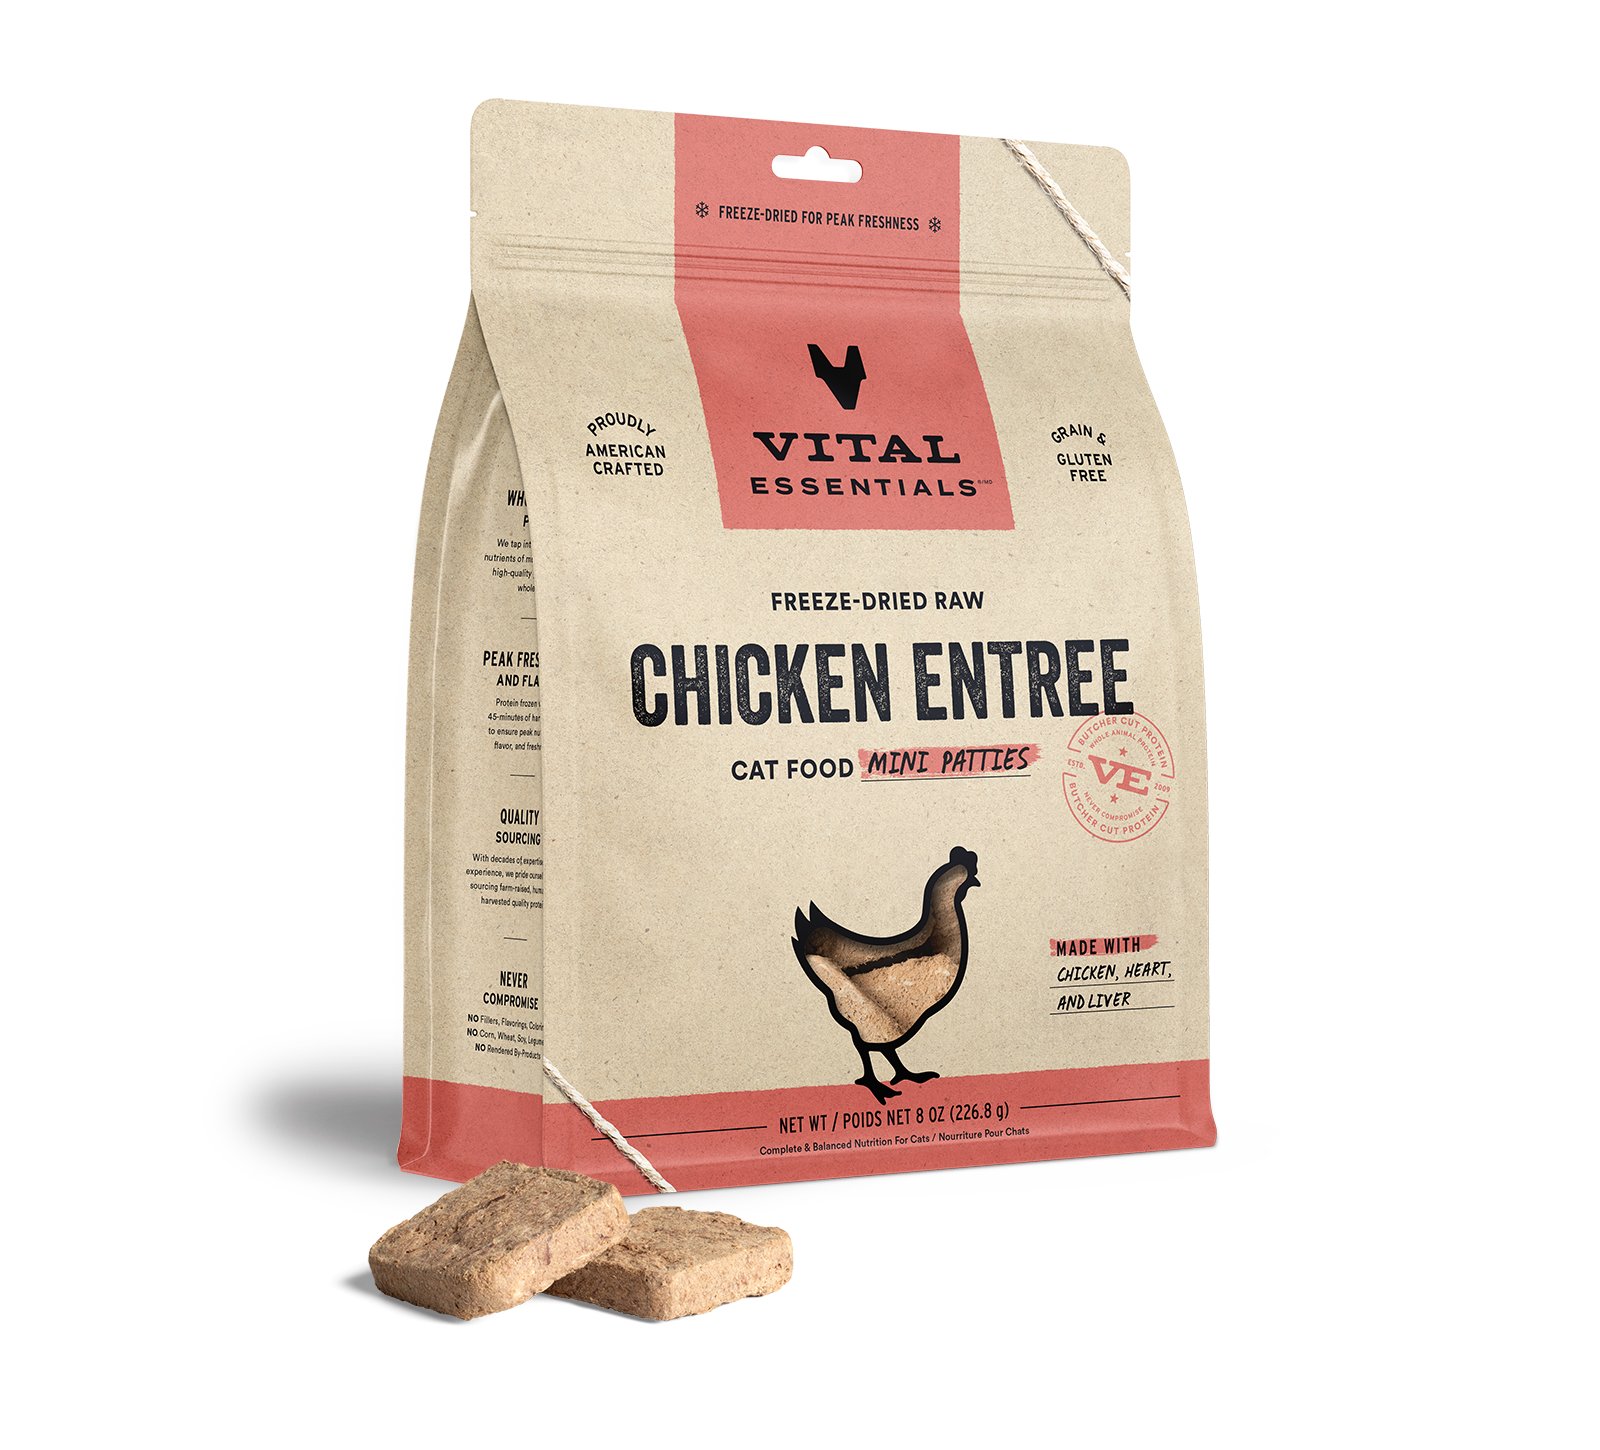 Vital Essentials Freeze-Dried Raw Chicken Entree Cat Food Mini Patties, 8 oz - Food